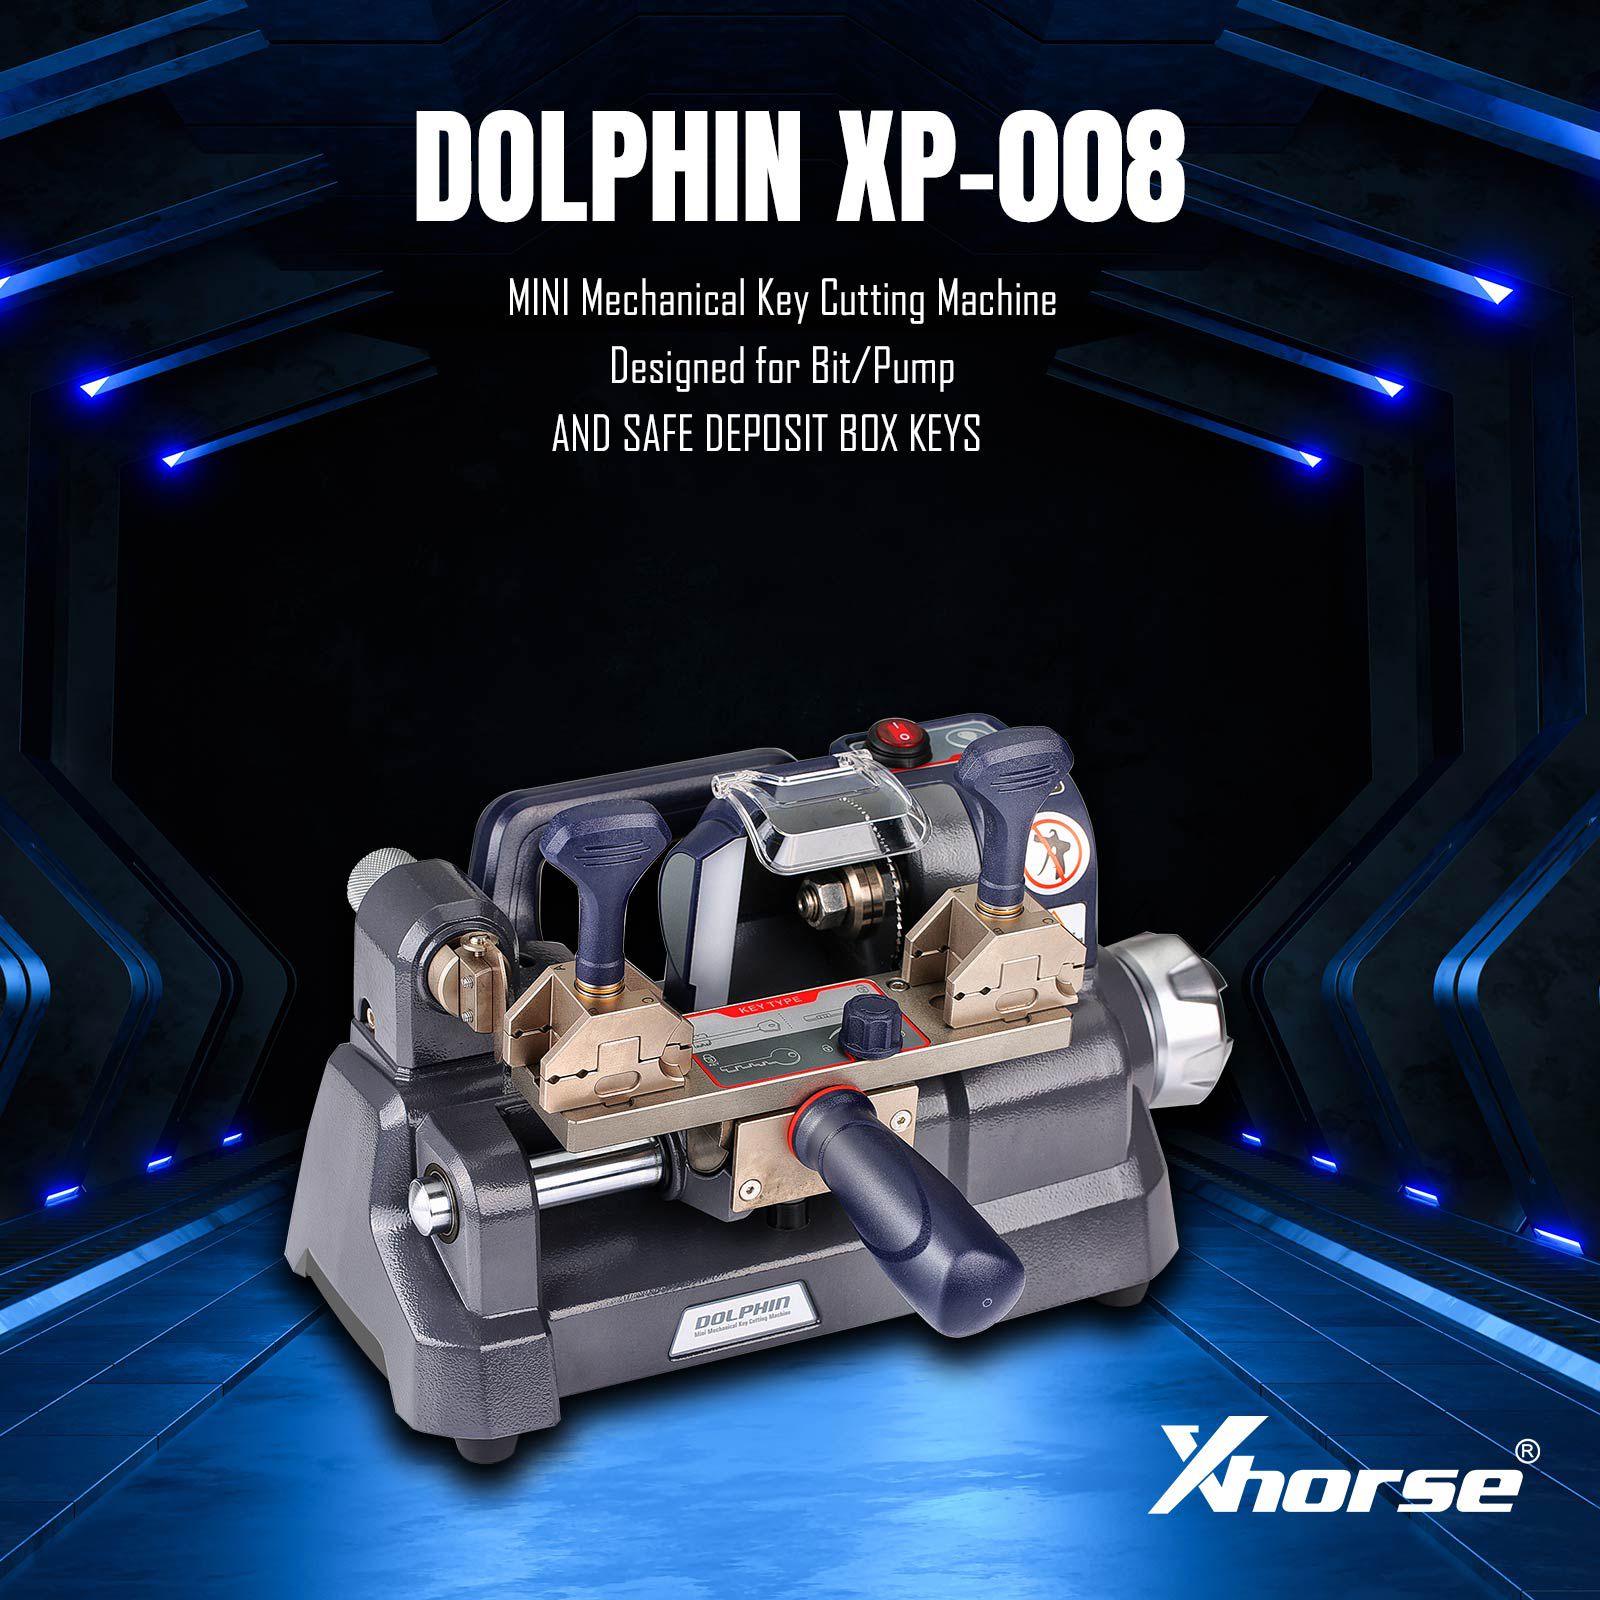 Neueste Xhorse Dolphin XP-008 Schlüsselschneidemaschine Mini Mechanisch für spezielle Bit/Doppel Bit Schlüssel